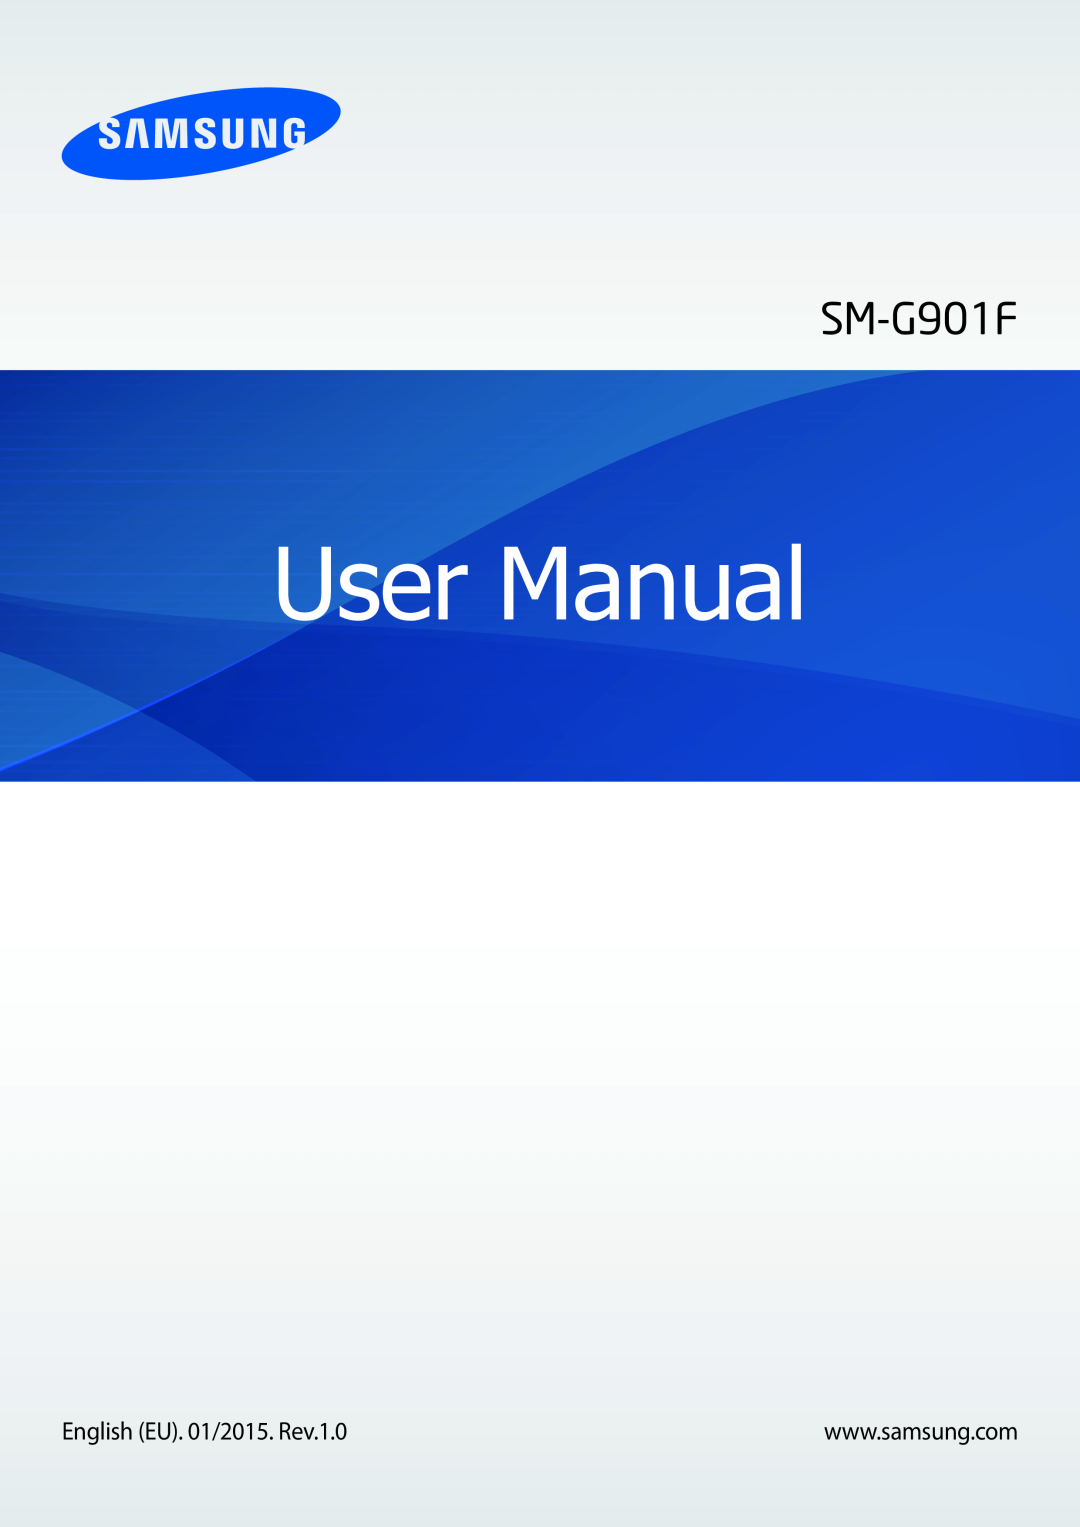 Samsung SM-G901FZKADBT, SM-G901FZBADTM, SM-G901FZDADTM, SM-G901FZKABOG, SM-G901FZDAATL manual Manual de usuario 